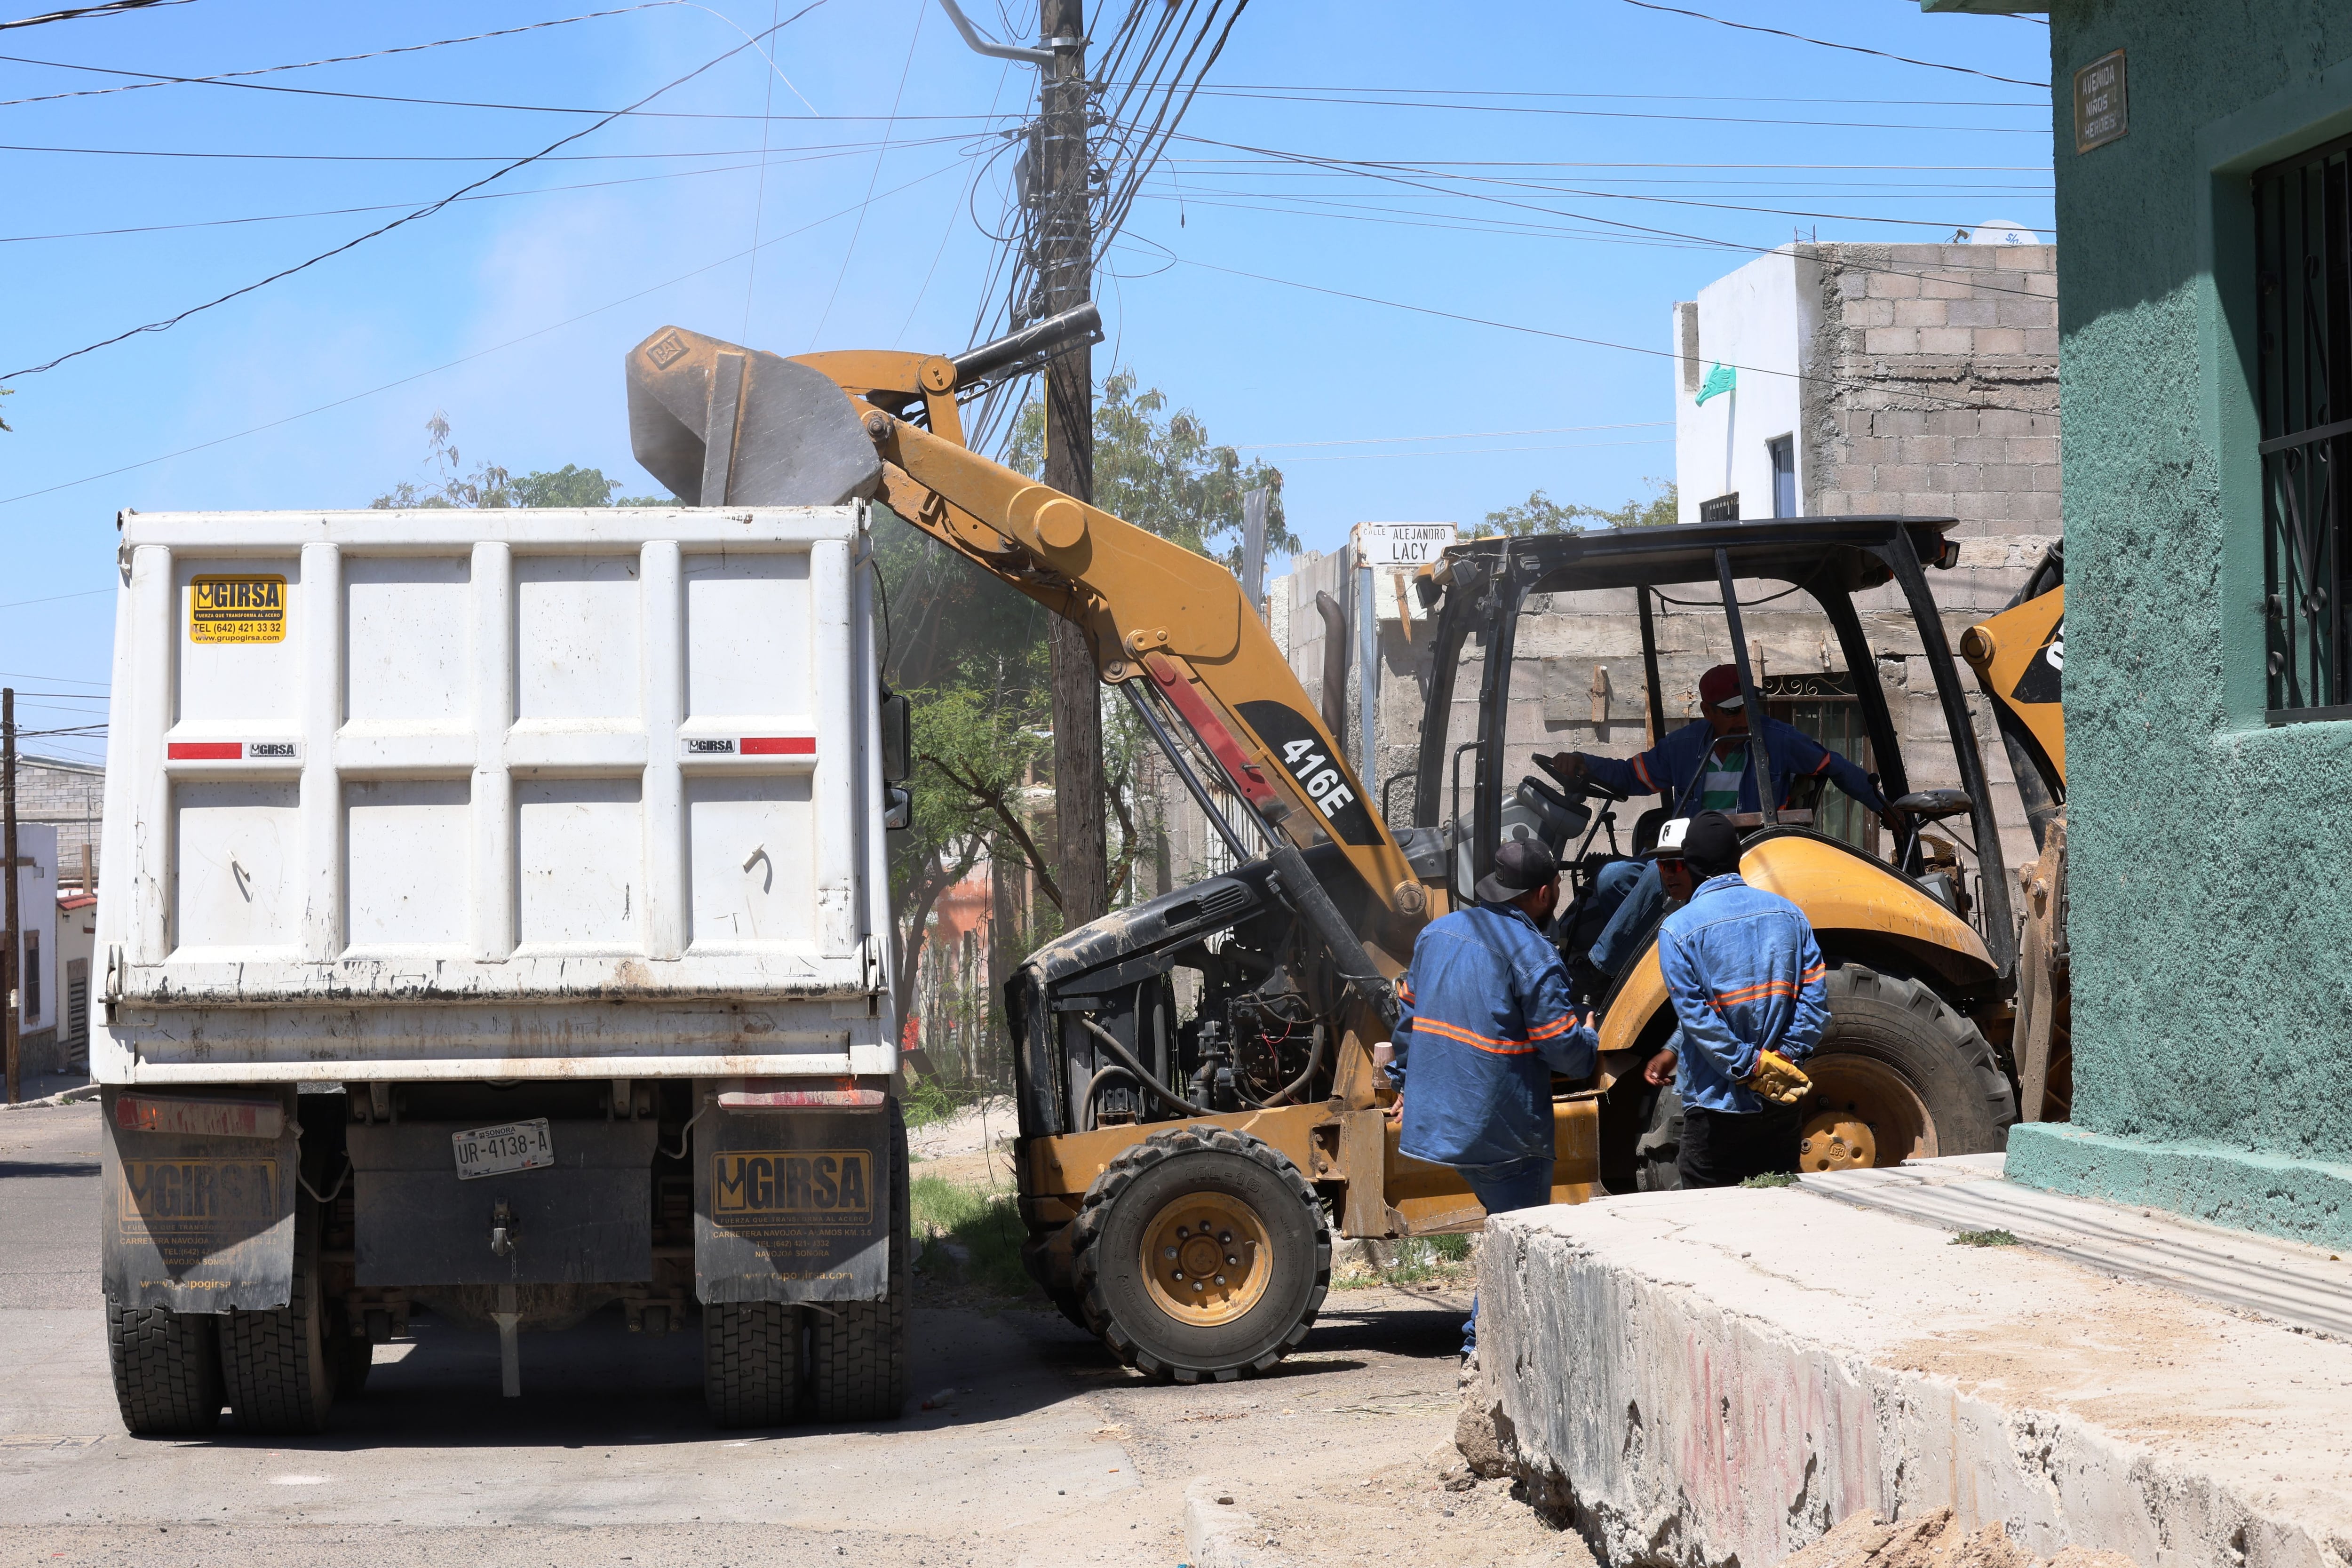 Día de descacharre en la colonia El Mariachi, donde trabajadores del Ayuntamiento de Hermosillo recolectaron escombro, electrodomésticos y basura. FOTO: GERARDO GONSÁLEZ